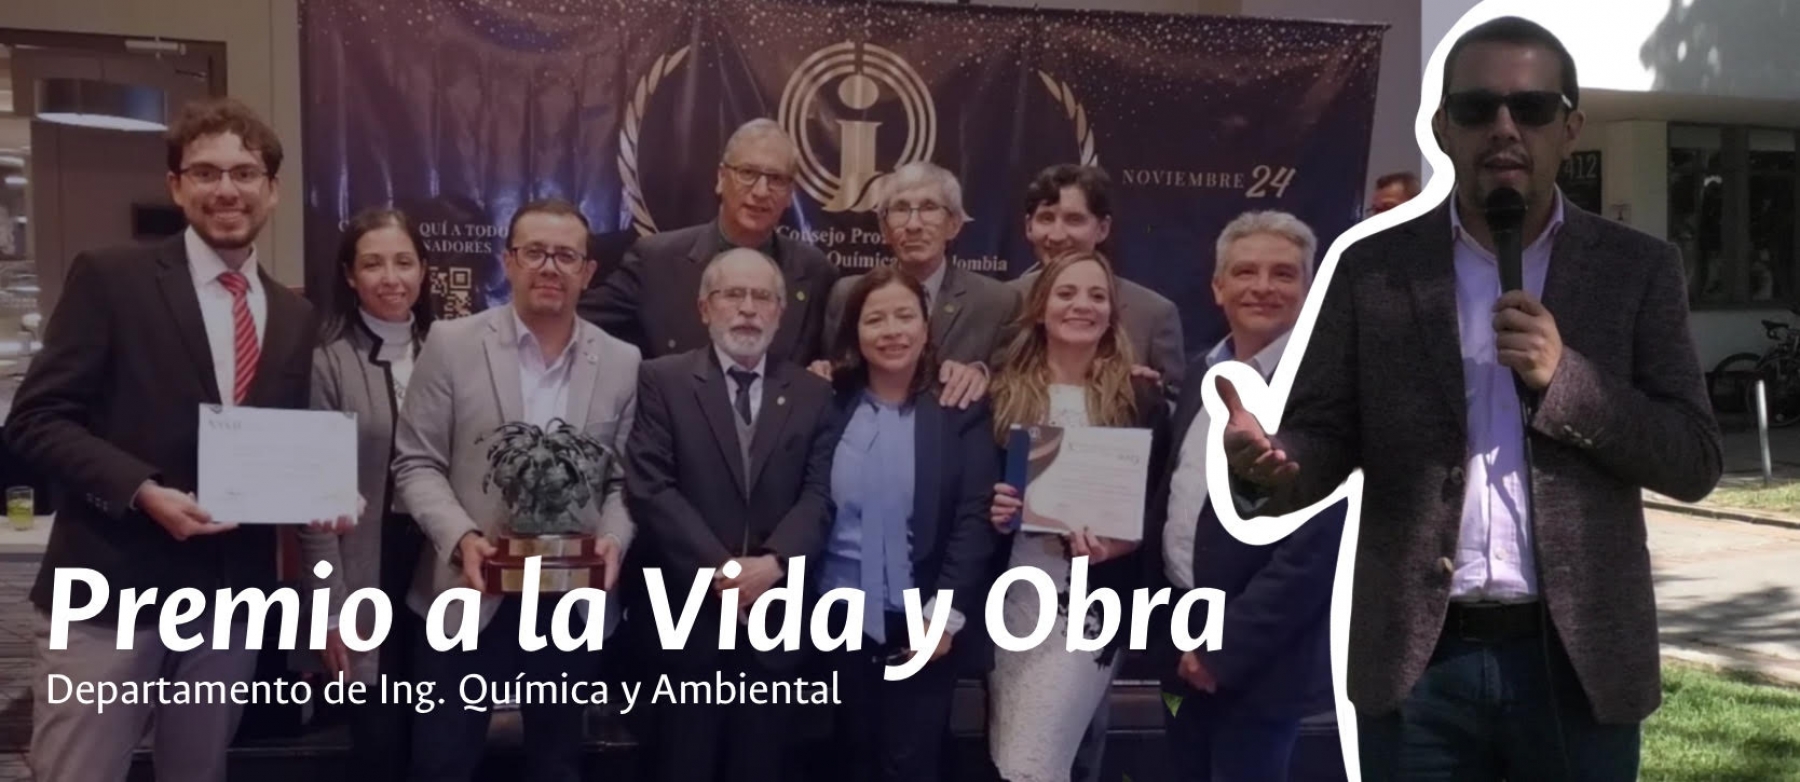 El programa de Ingeniería Química de la Universidad Nacional de Colombia recibe el Premio a la Vida y Obra en Ingeniería Química otorgado por el Consejo Profesional de Ingeniería Química de Colombia